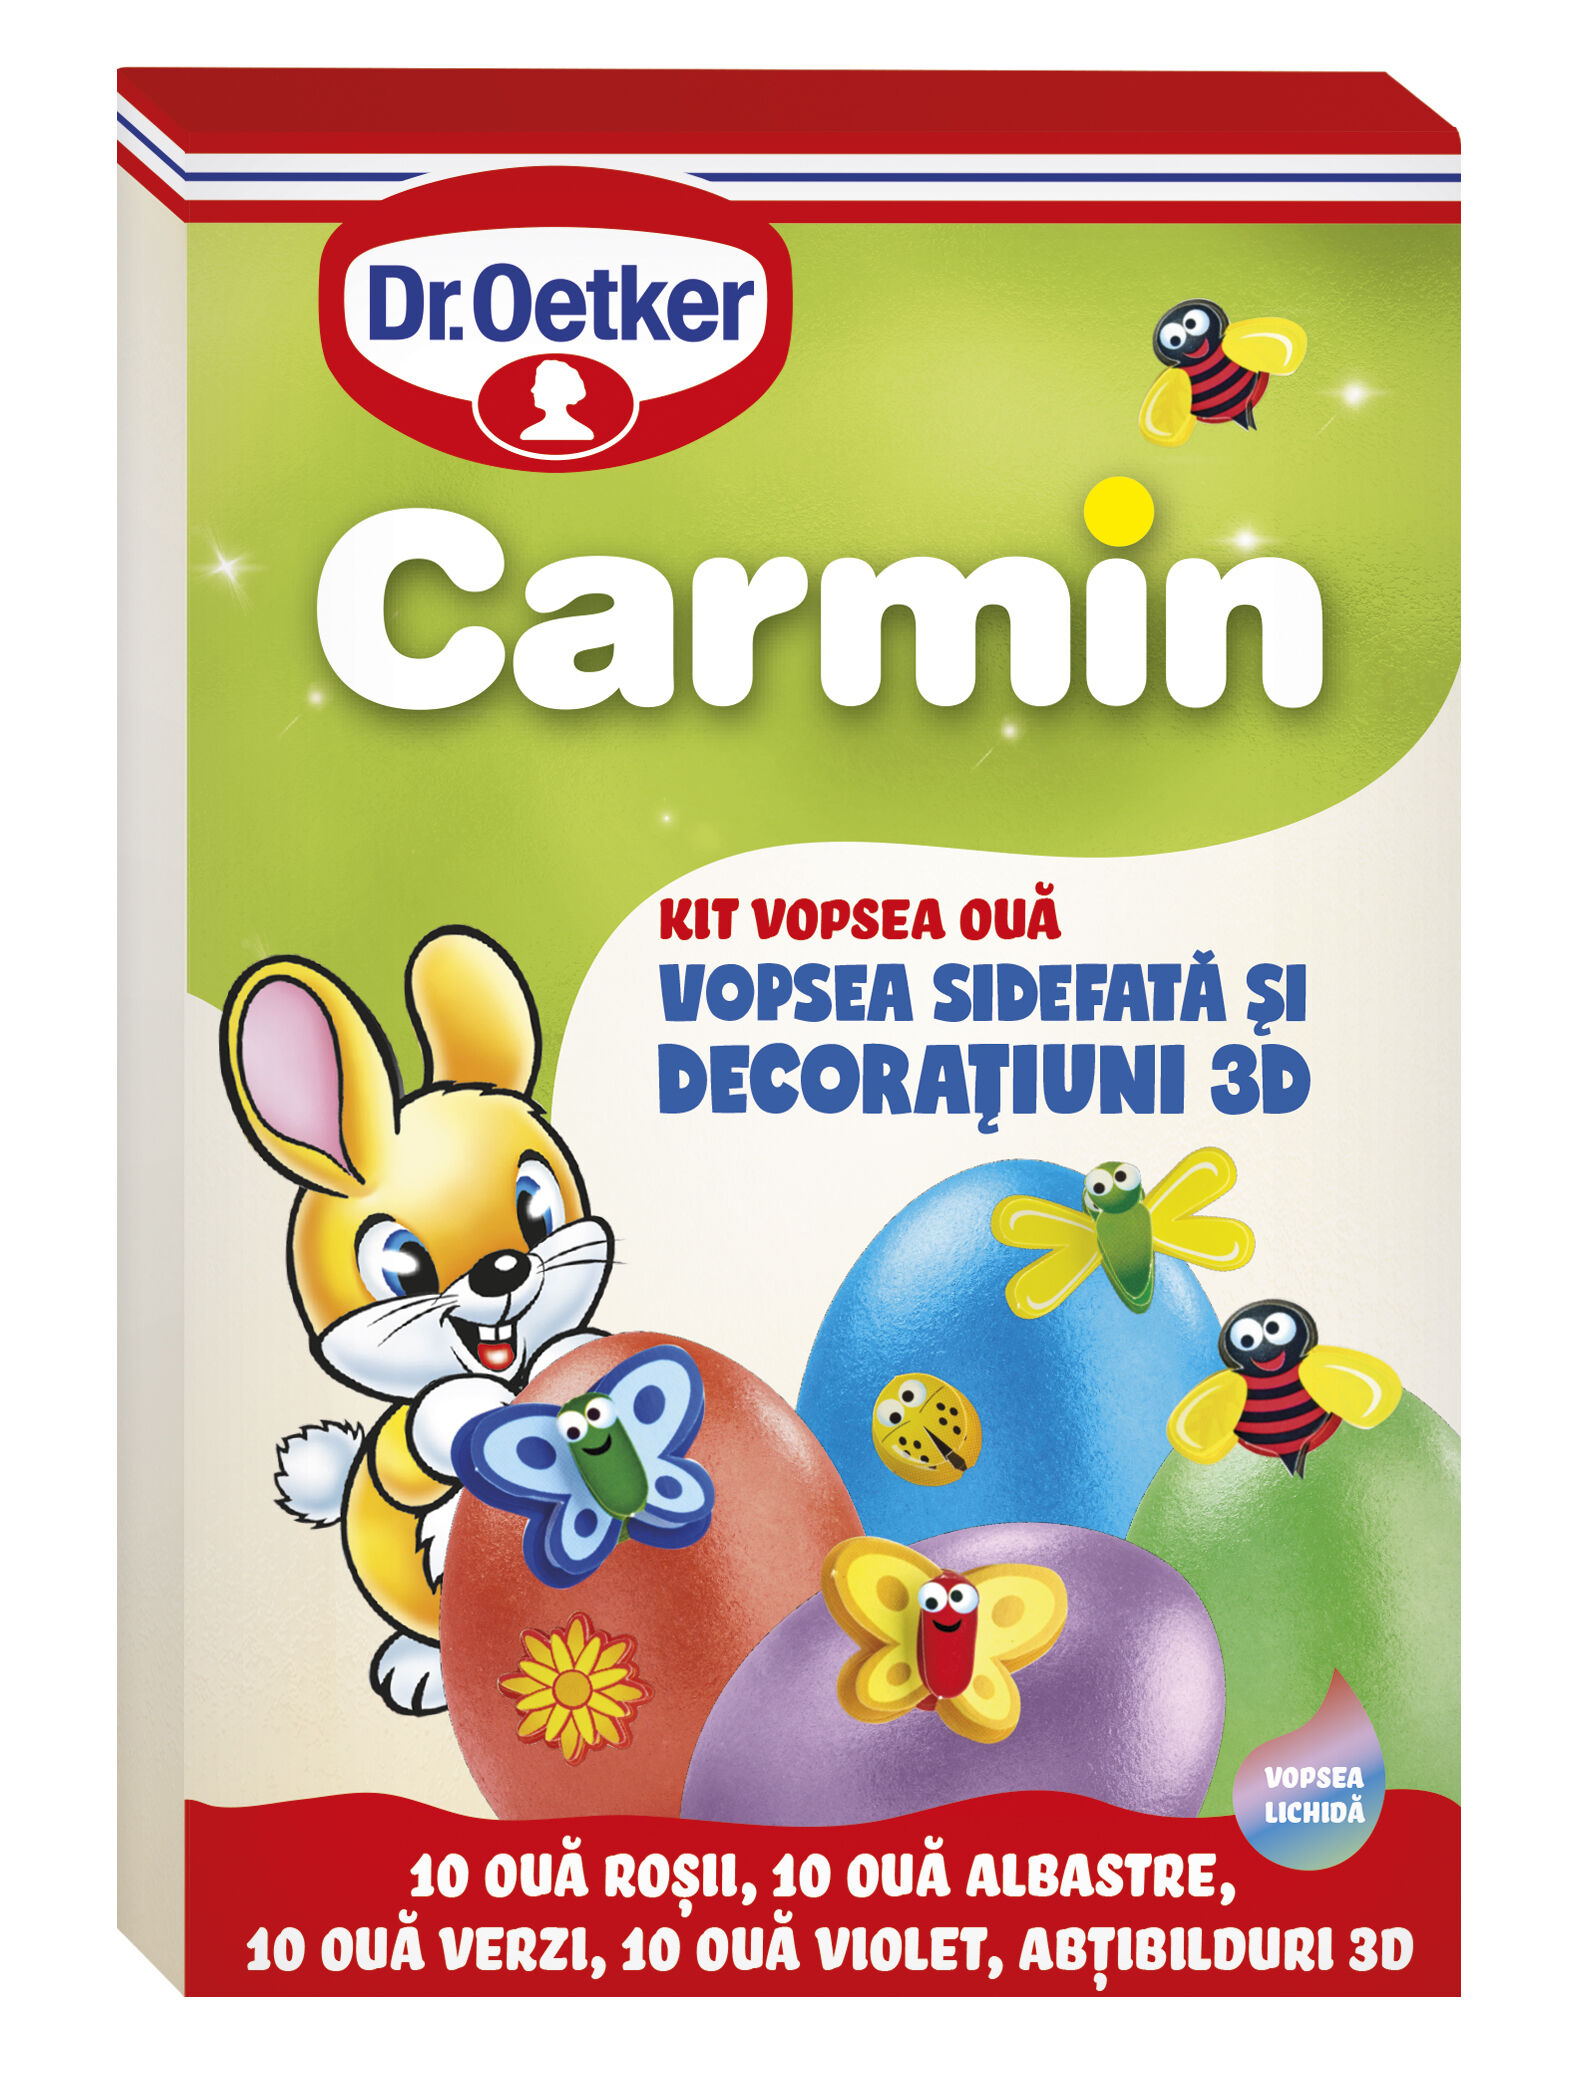 Vopsea lichida kit Carmin pentru 40 oua